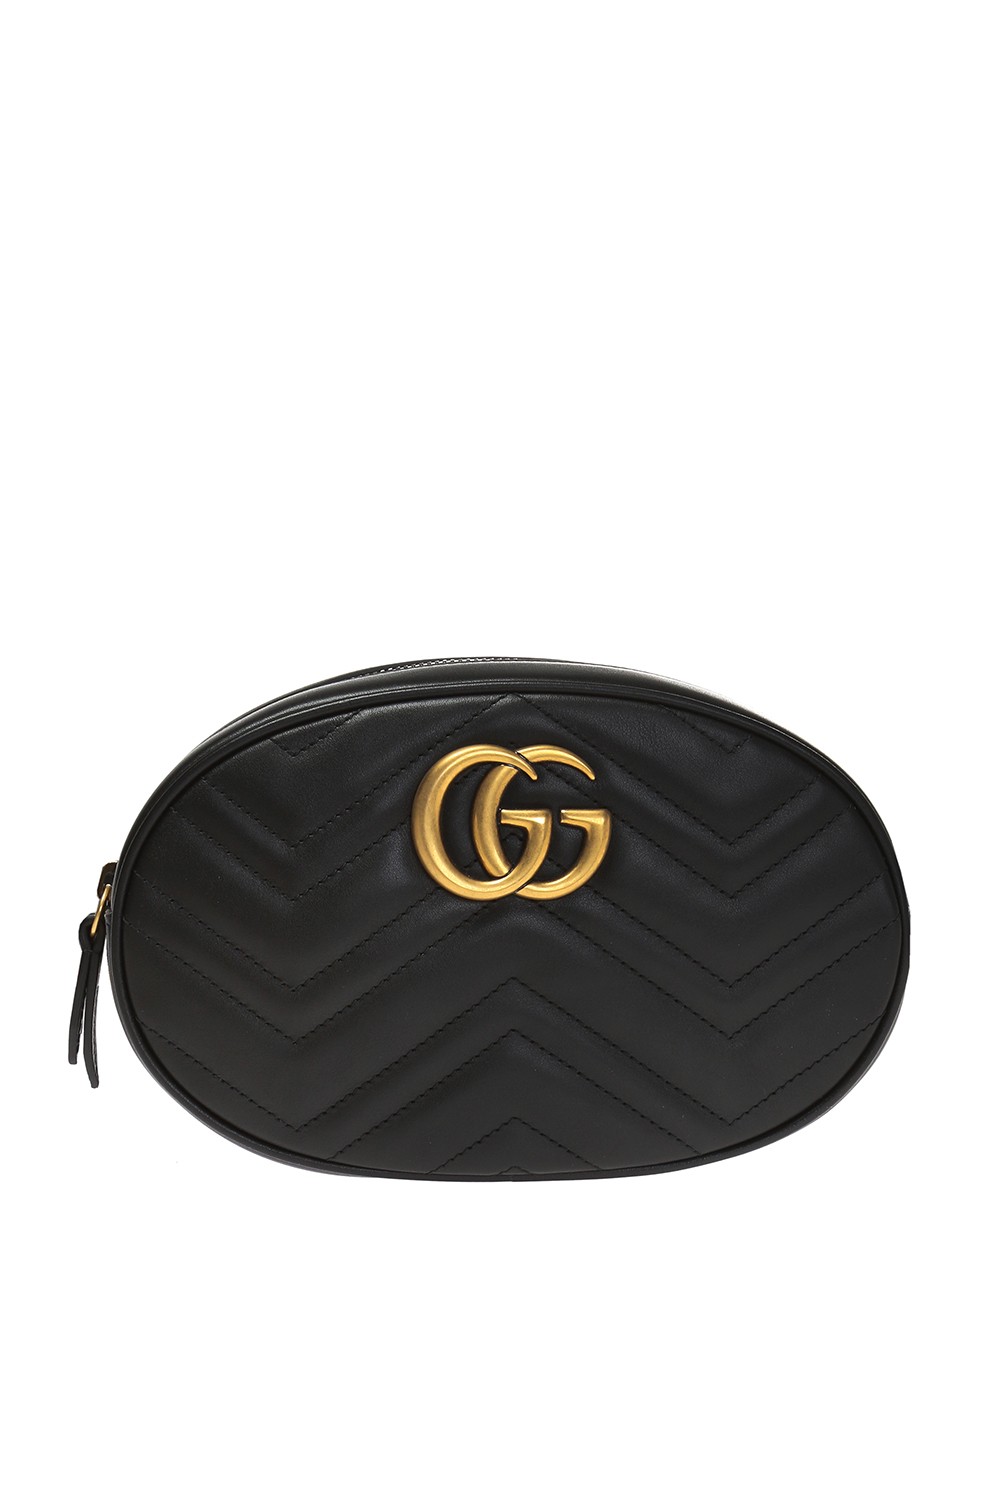 strukturelt kig ind PEF GG Marmont' belt bag Gucci - Vitkac US